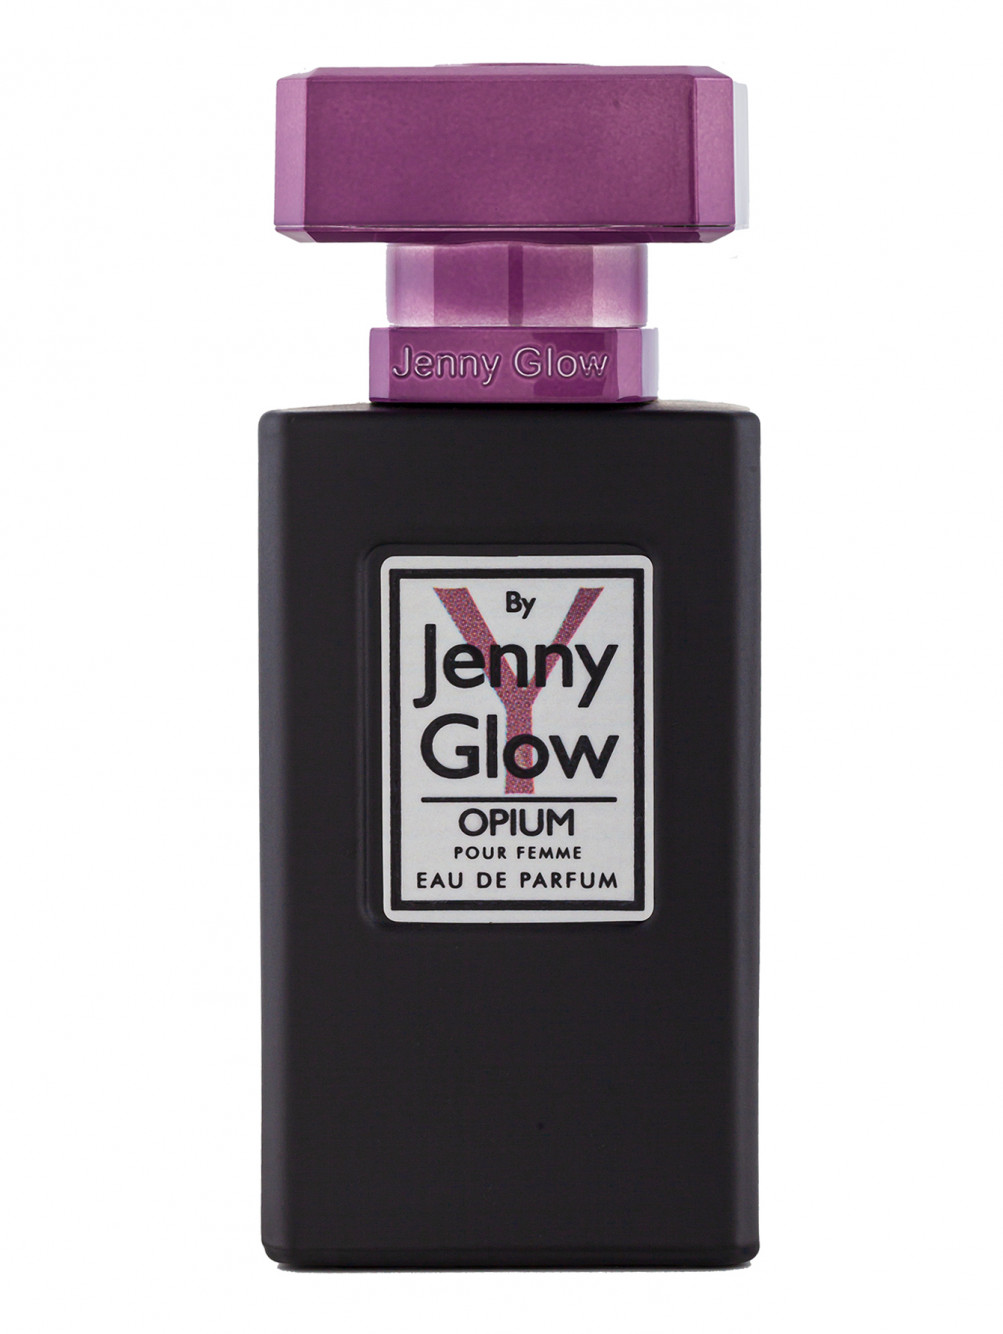 Парфюмерная вода Jenny Glow Opium Pour Femme, 30 мл - Общий вид